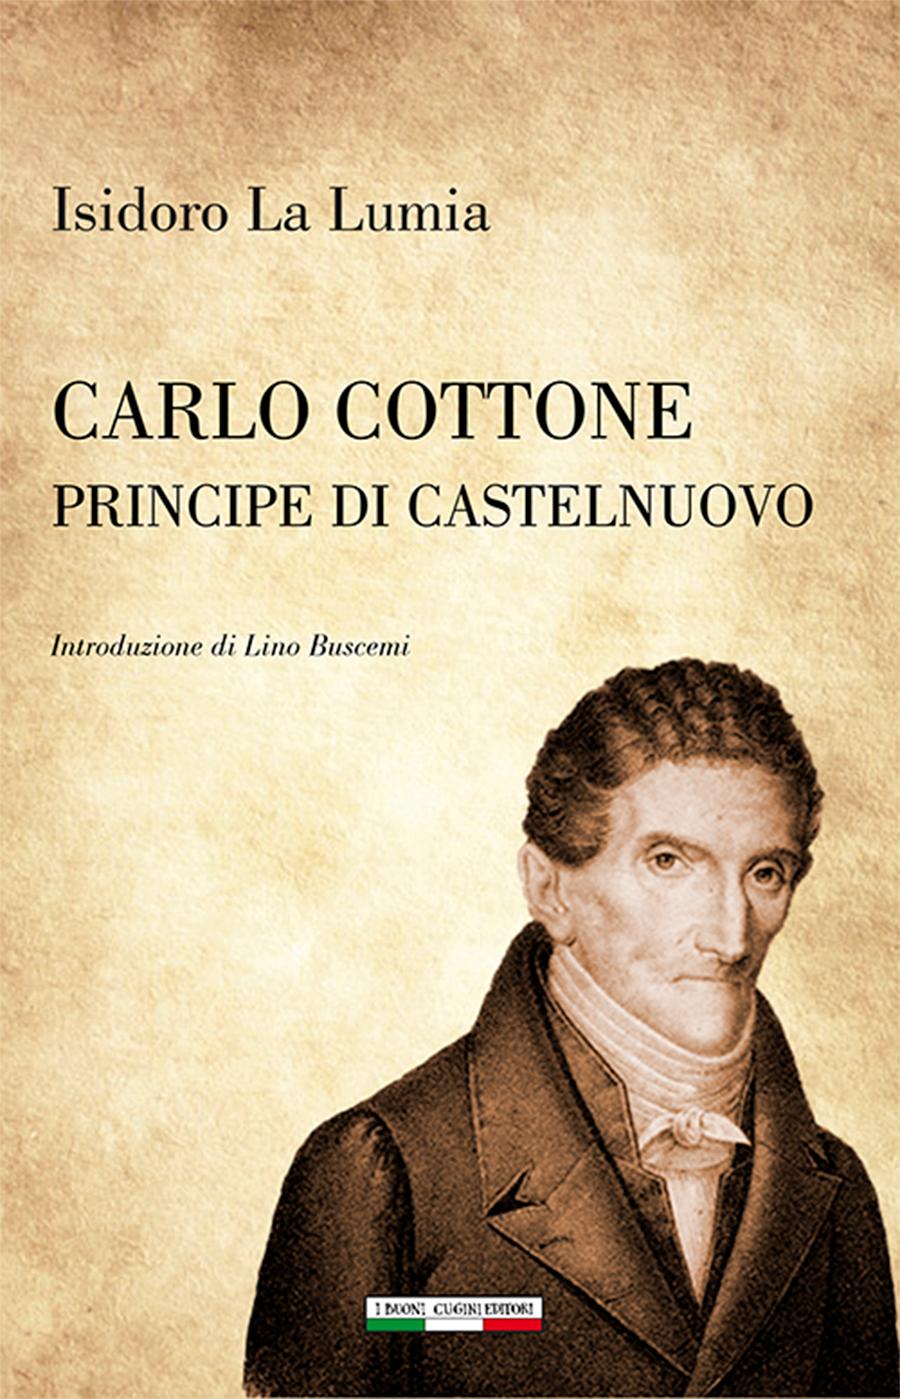 Isidoro La Lumia: Carlo Cottone principe di Castelnuovo